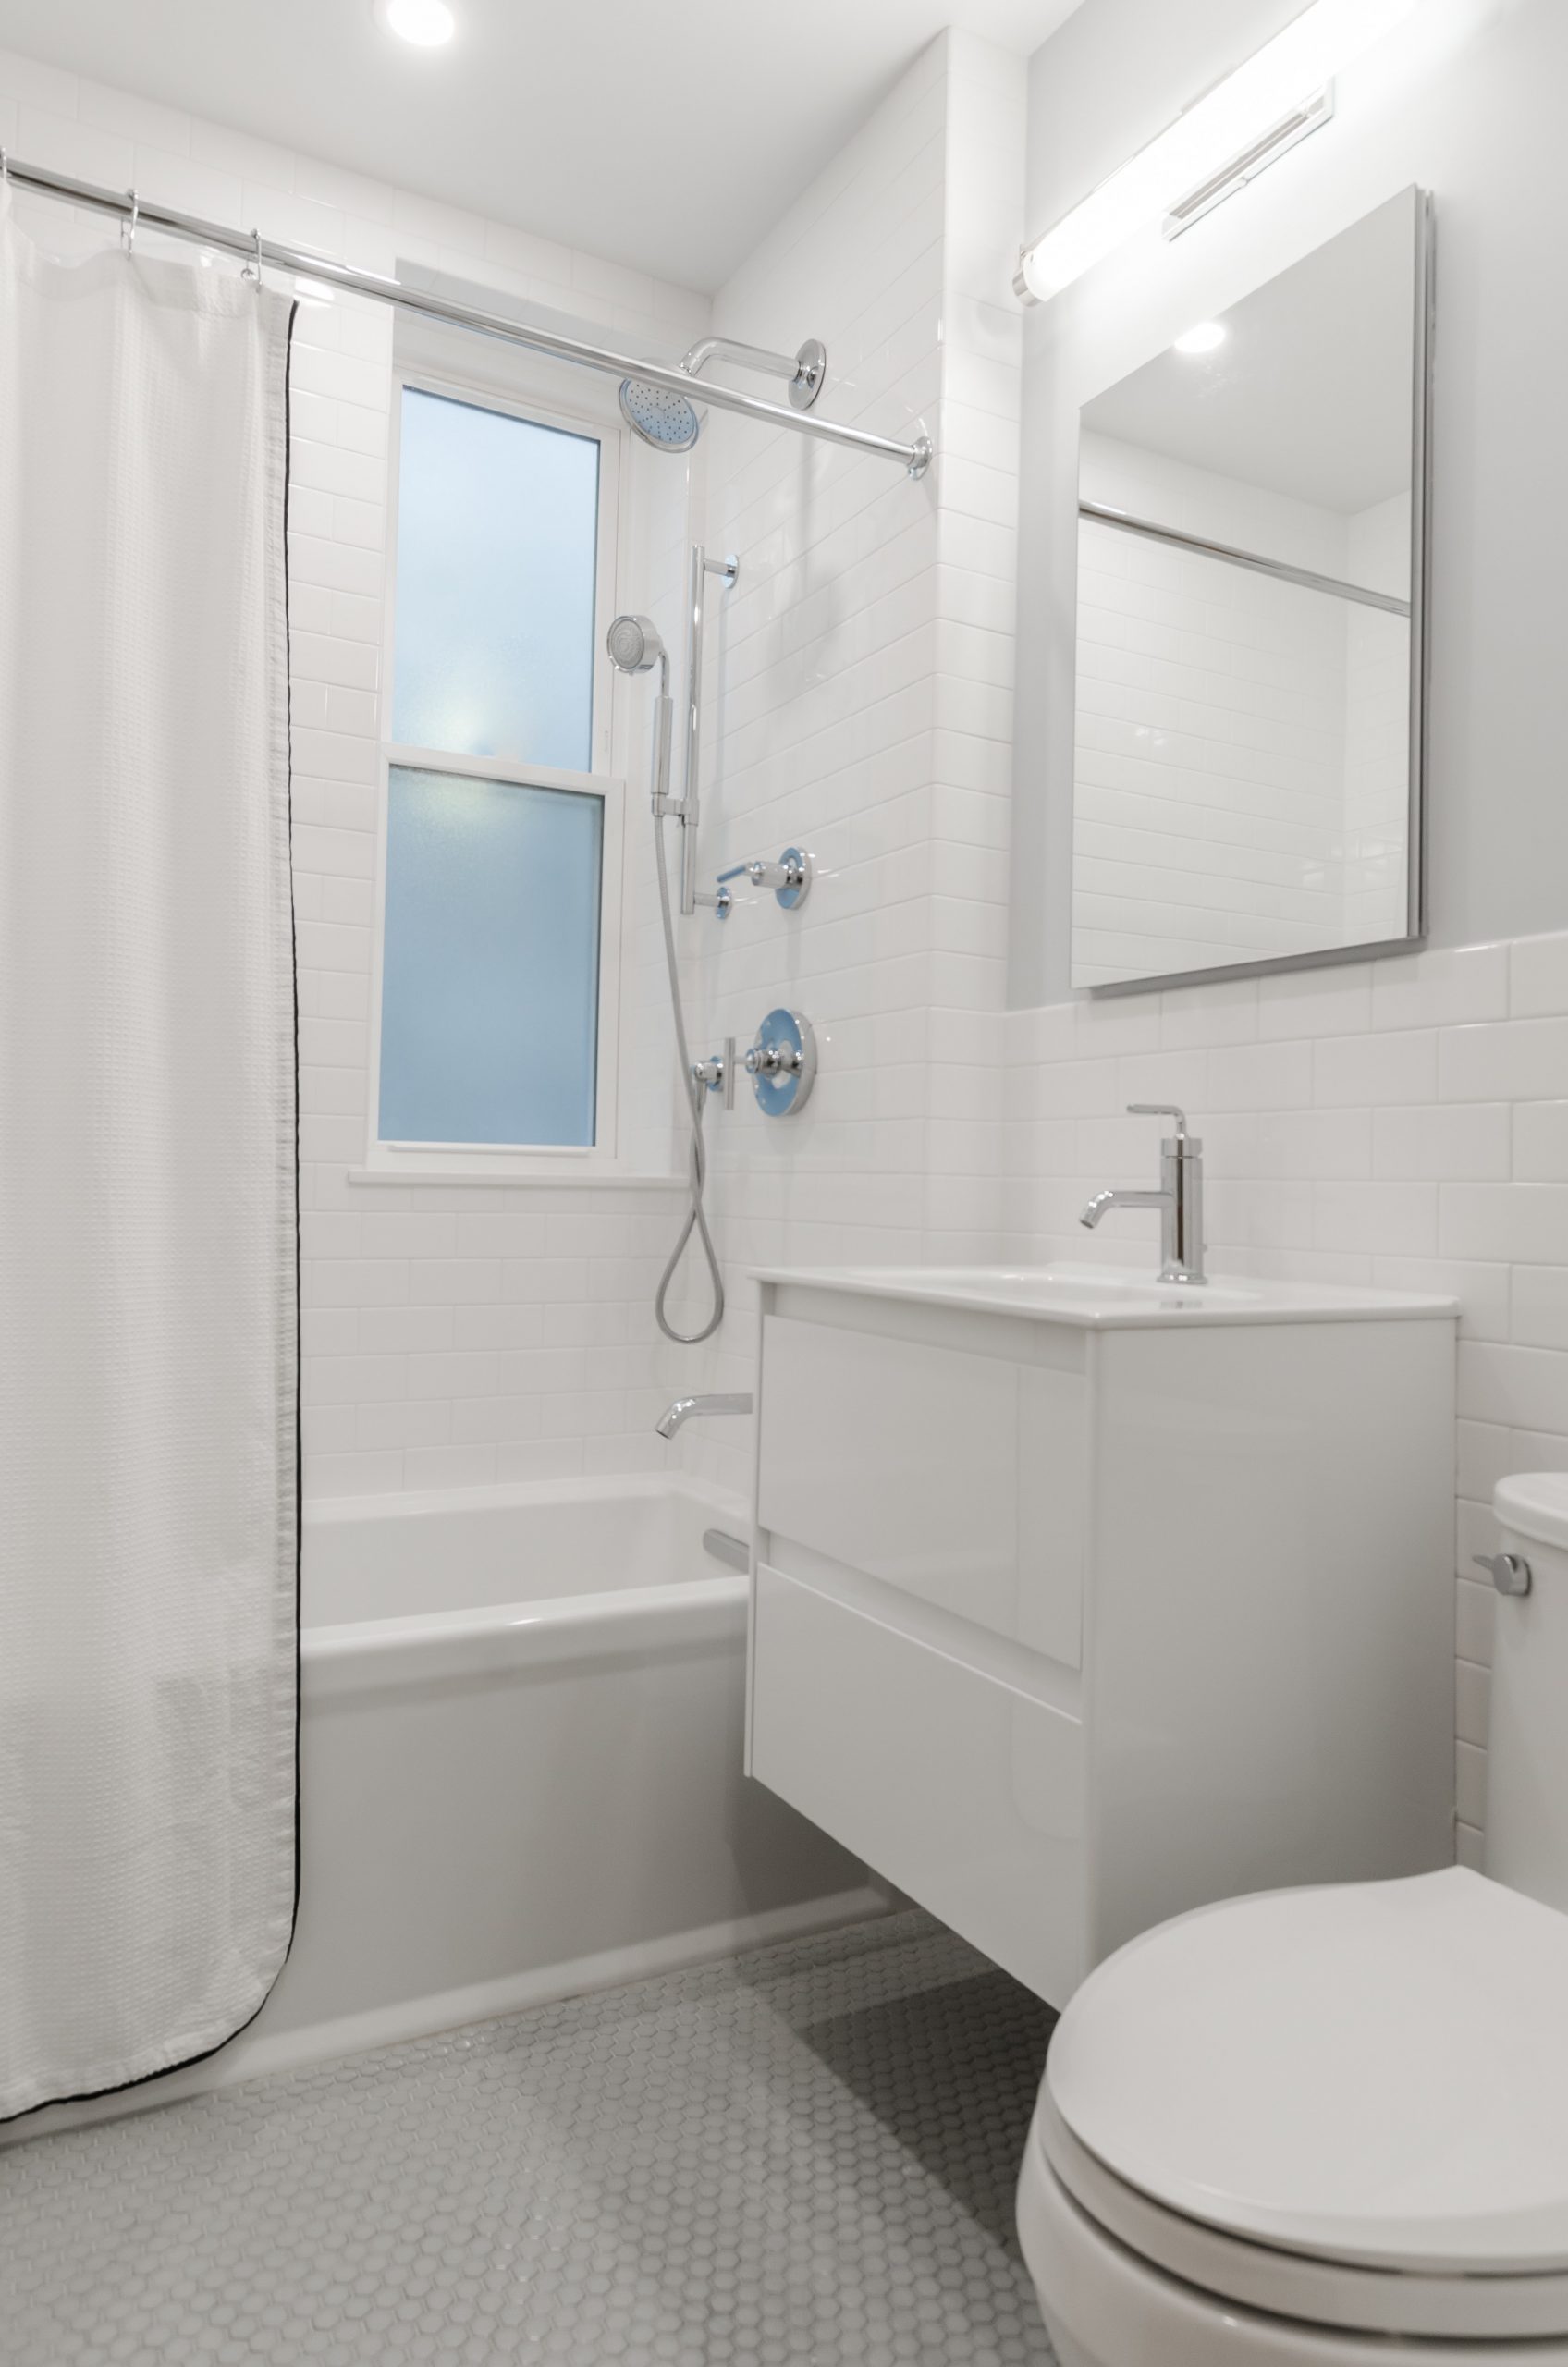 A plain white bathroom with vinyl floor